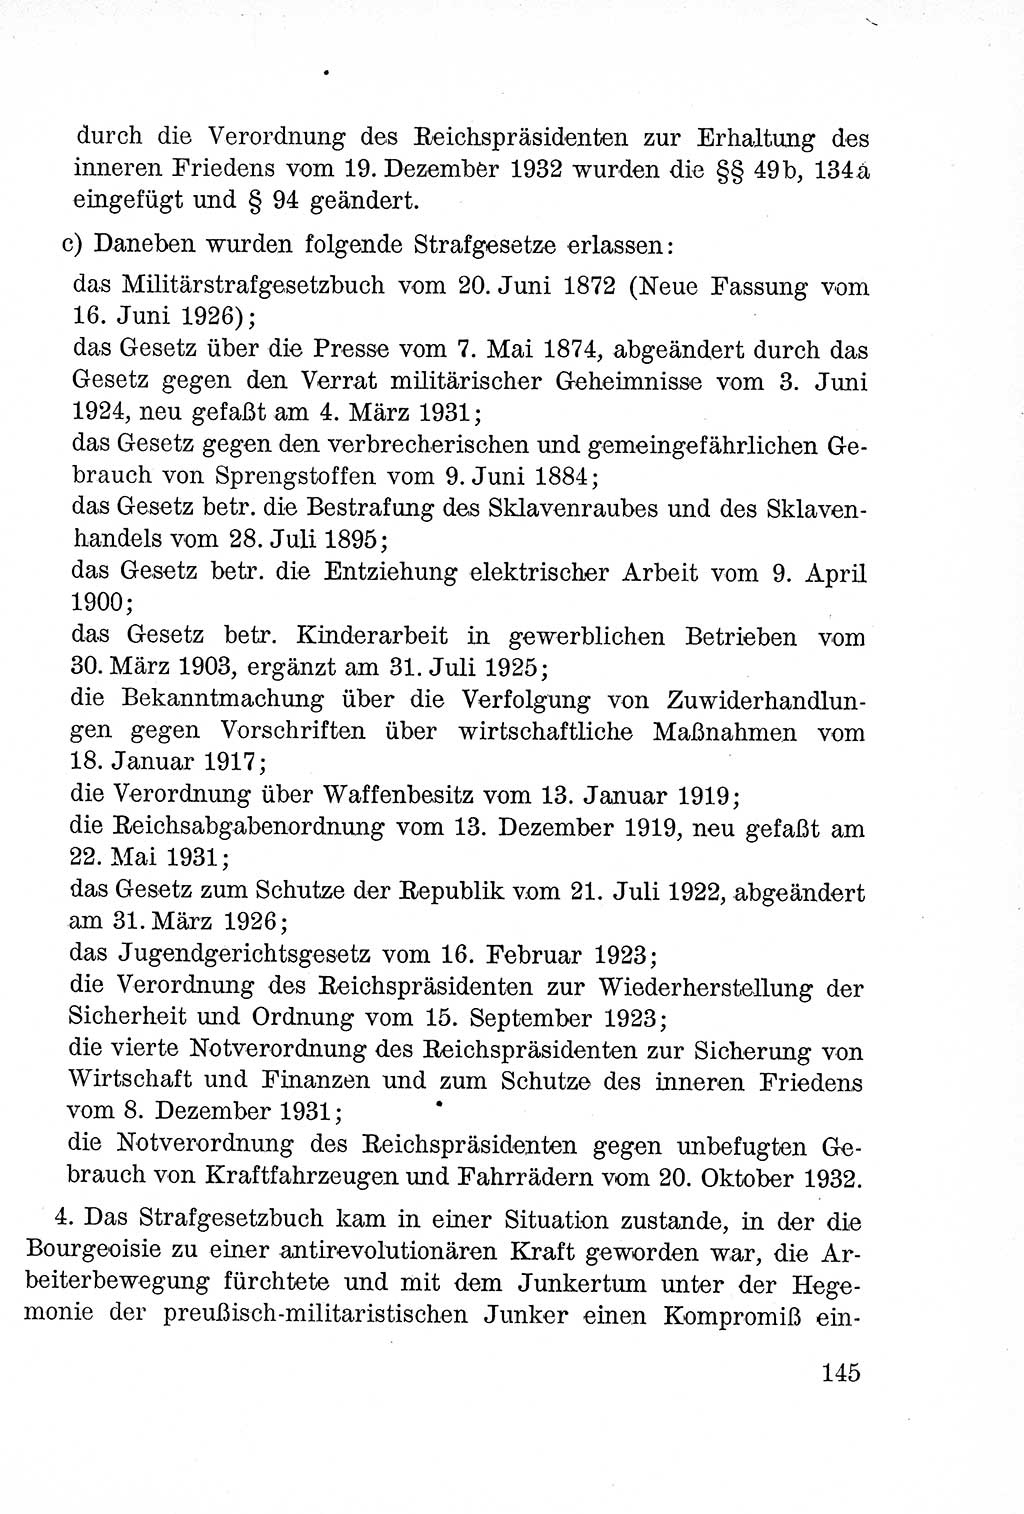 Lehrbuch des Strafrechts der Deutschen Demokratischen Republik (DDR), Allgemeiner Teil 1957, Seite 145 (Lb. Strafr. DDR AT 1957, S. 145)